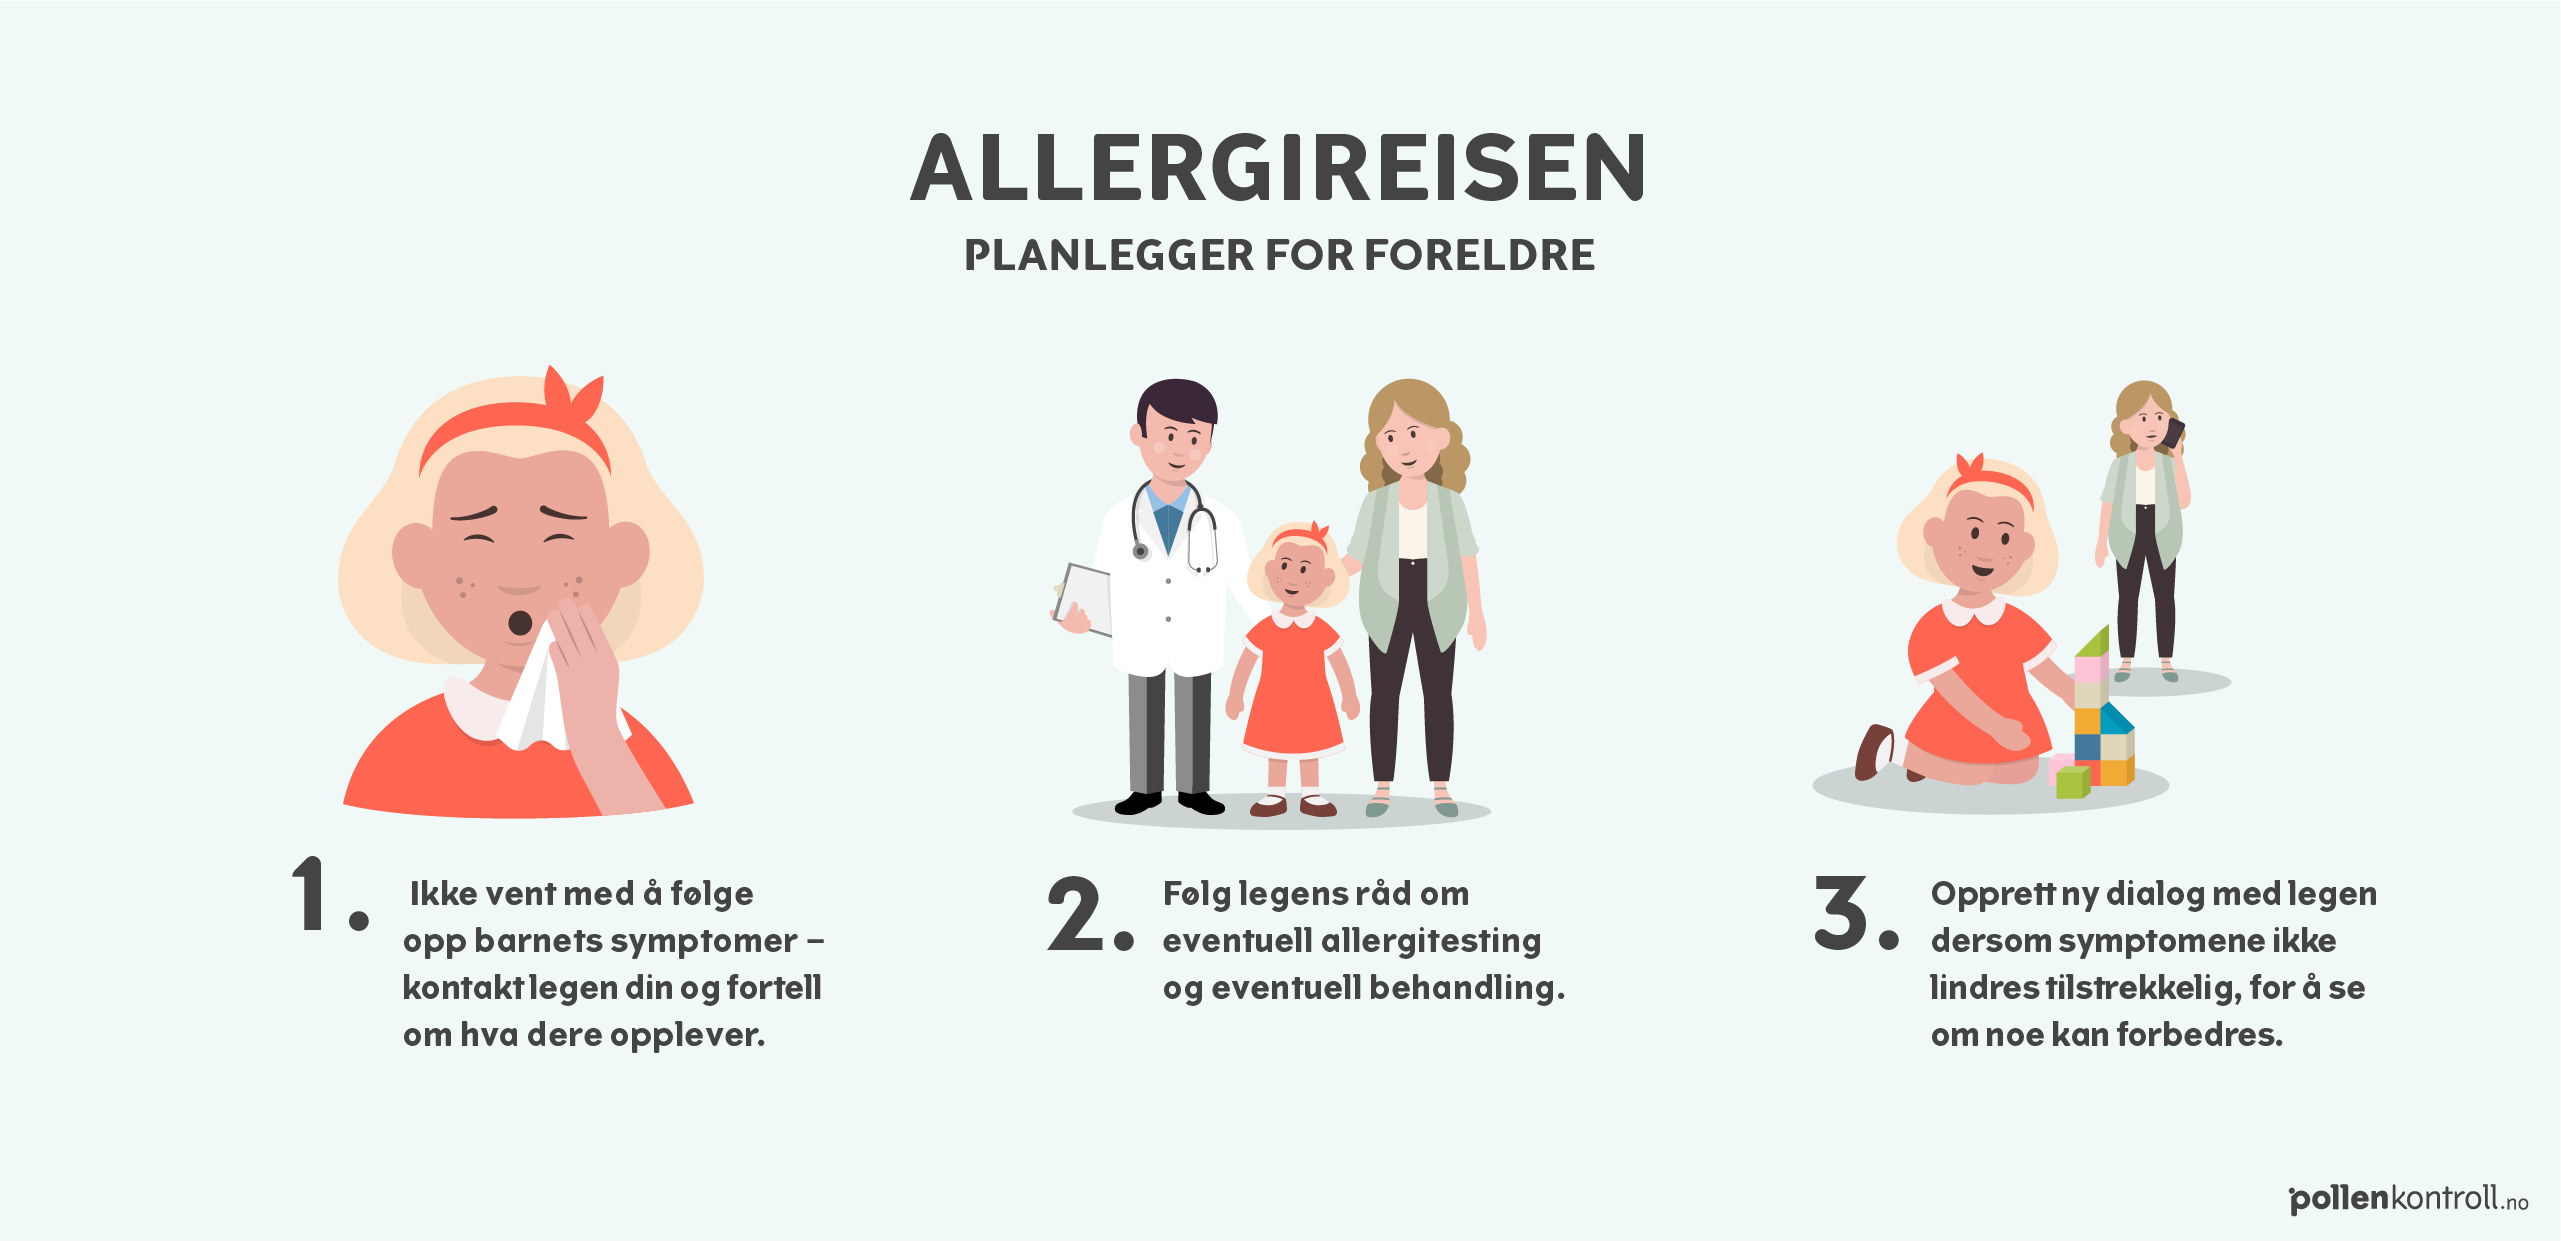 Infografikk om hvordan utredning og diagnostisering av barn med allergisymptomer kan foregå. Detaljer fra infografikken er listet opp under. 